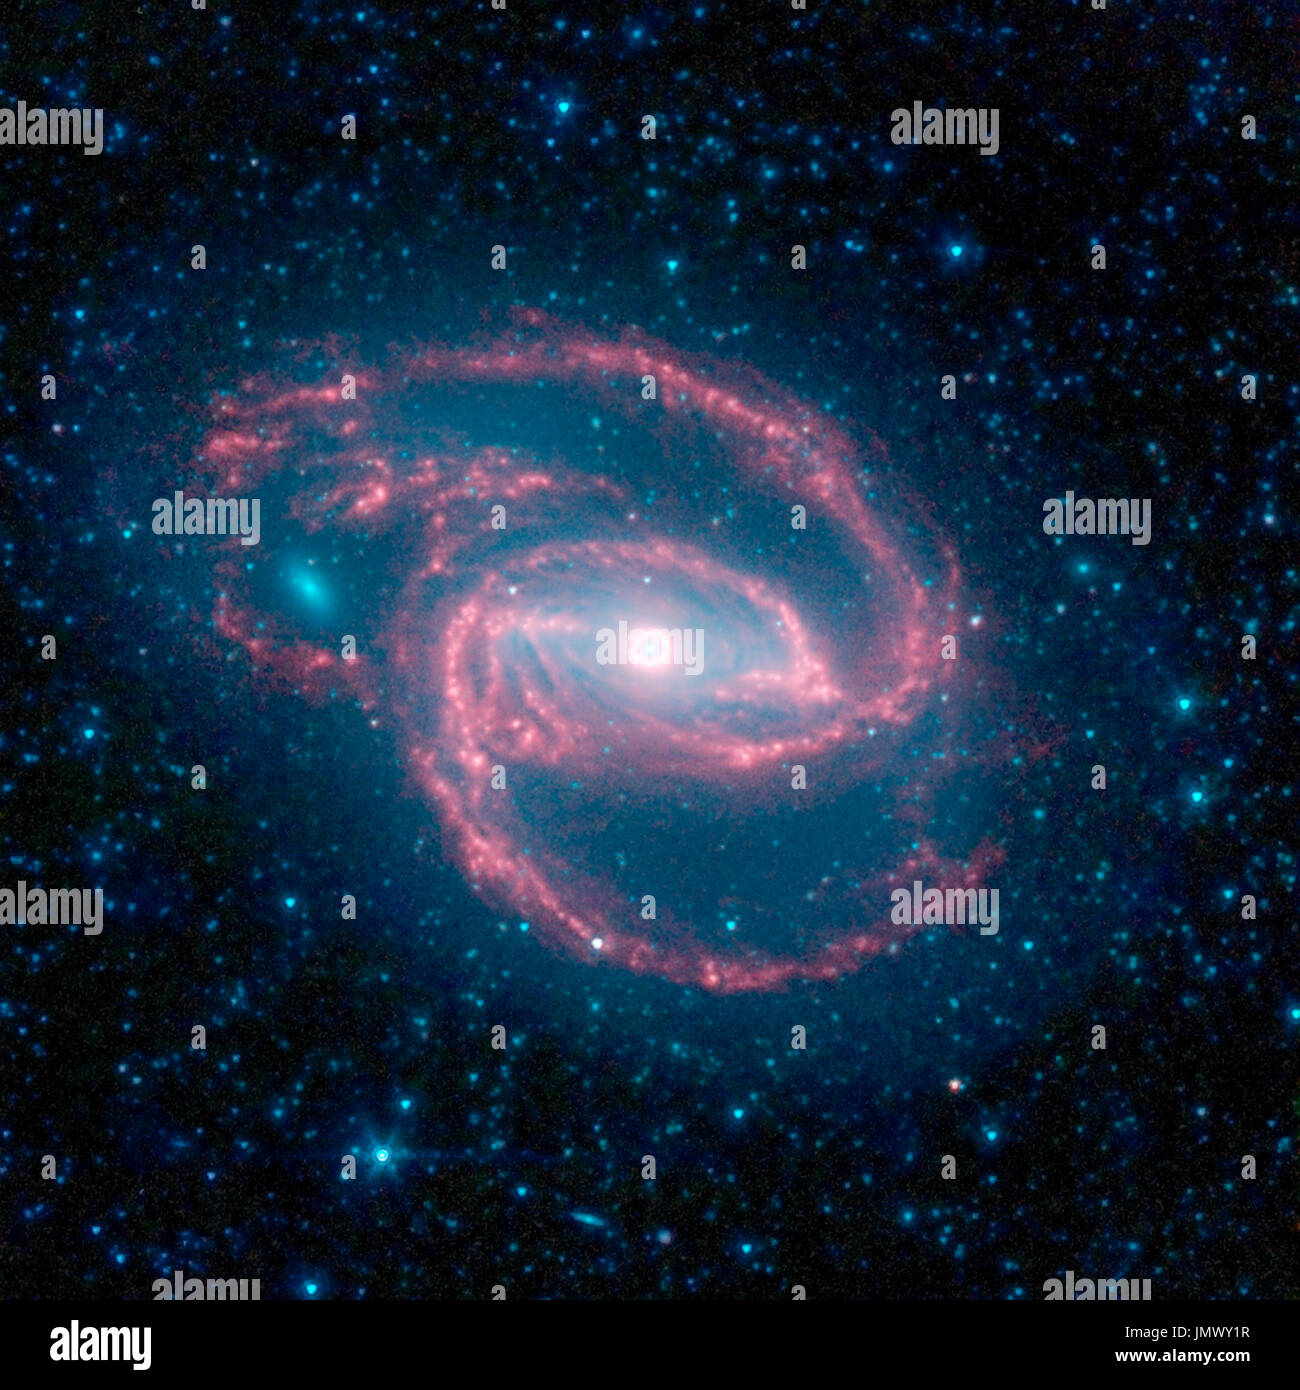 Pasadena, CA - Luglio 23, 2009 -- la Nazionale Aeronautica e Spaziale della NASA (Amministrazione) telescopio spaziale Spitzer ha immaginato una creatura selvatica del buio -- una galassia a spirale con un occhio-simile oggetto al suo centro. La galassia, chiamato NGC 1097, si trova a 50 milioni di anni luce di distanza. Essa è conformata a spirale come la nostra Via Lattea, con lunghi bracci spindly di stelle. Il 'occhio' al centro della galassia è in realtà un mostruoso buco nero circondato da una corona di stelle. In questo codificati a colori vista a raggi infrarossi da Spitzer, la zona attorno al invisibile buco nero è blu e la corona di stelle, bianco. Il buco nero Foto Stock